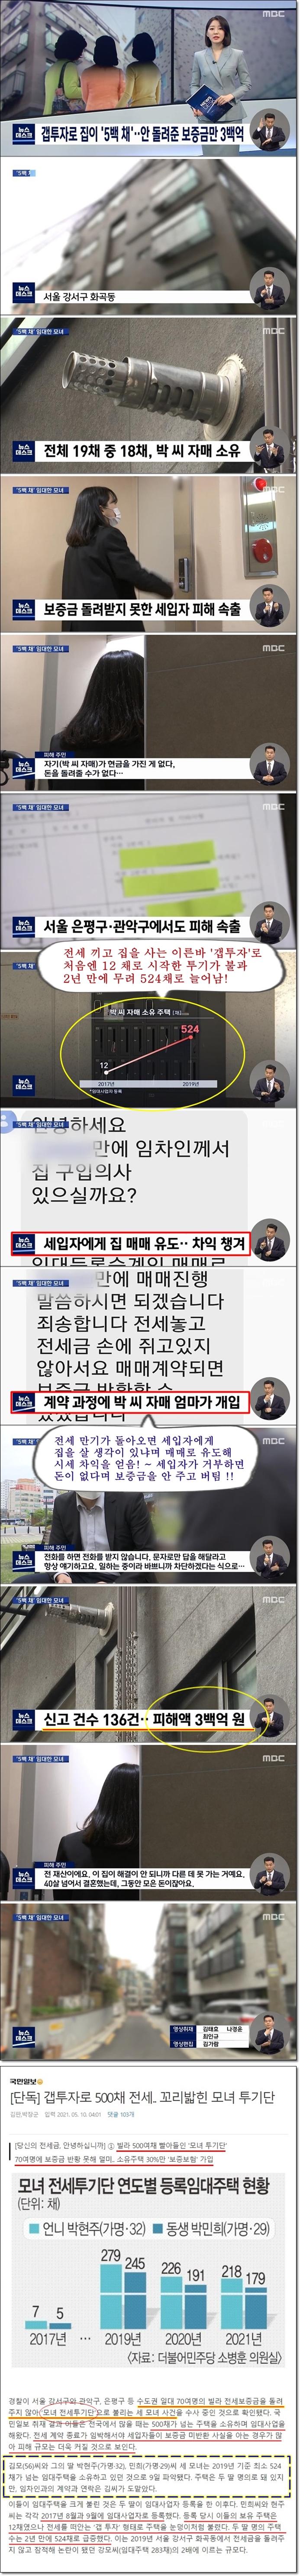 갭투자 500채, 모녀투기단(MBC뉴스)(완).jpg